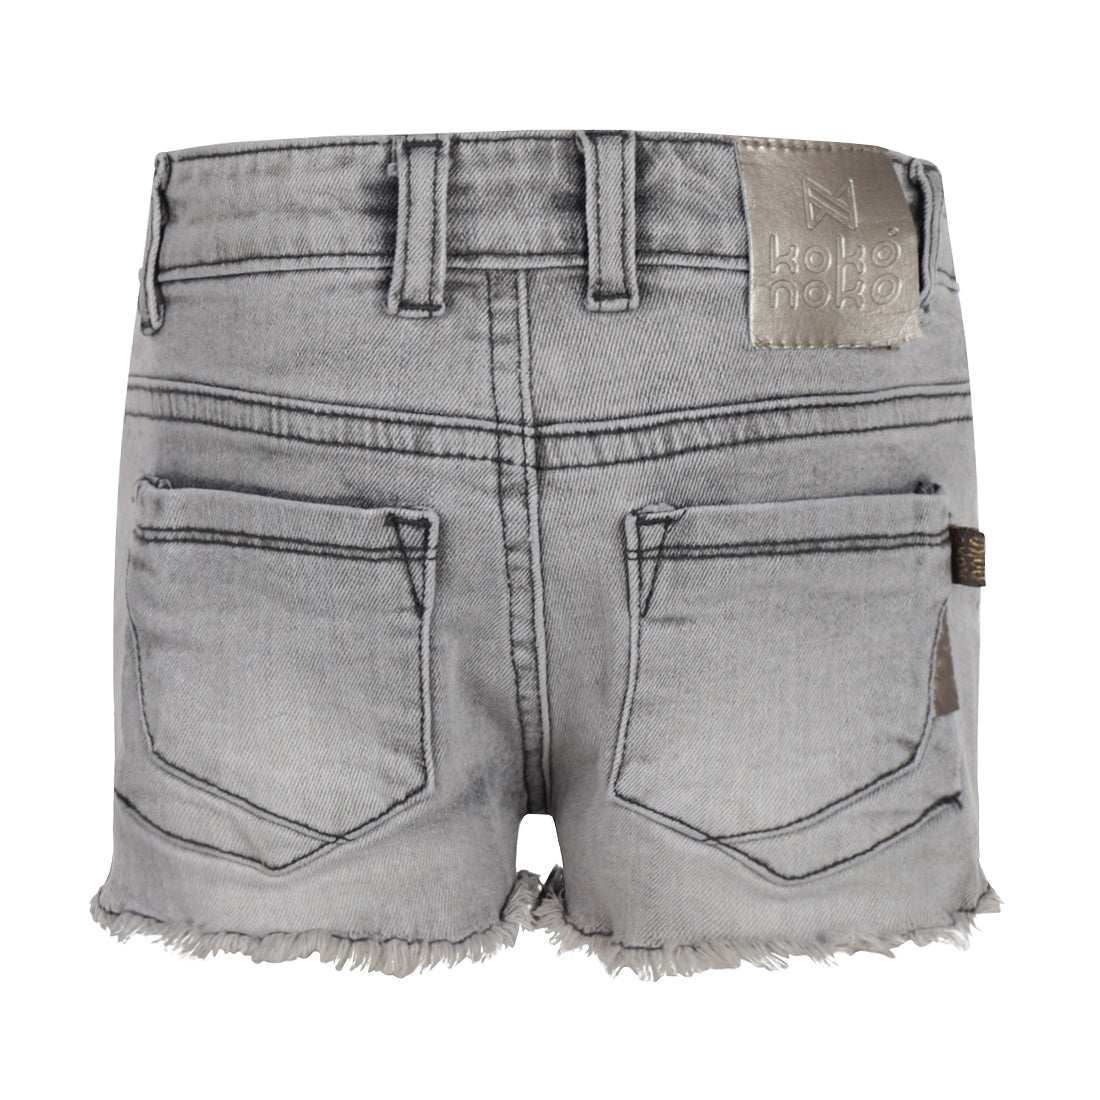 Meisjes Jeans shorts van Koko Noko in de kleur Grey jeans in maat 128.